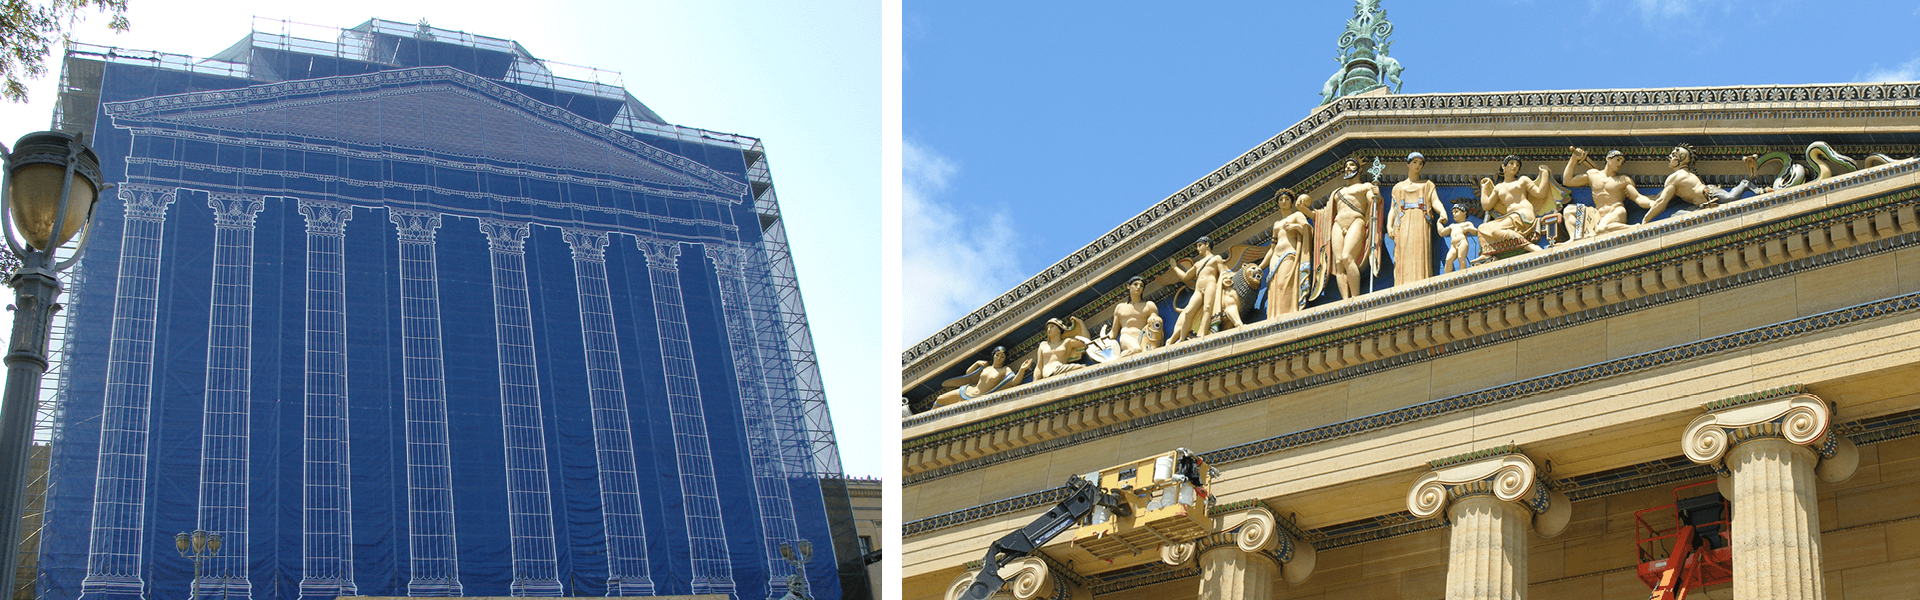 GO to The Philadelphia Museum of Art – Façade Renovation